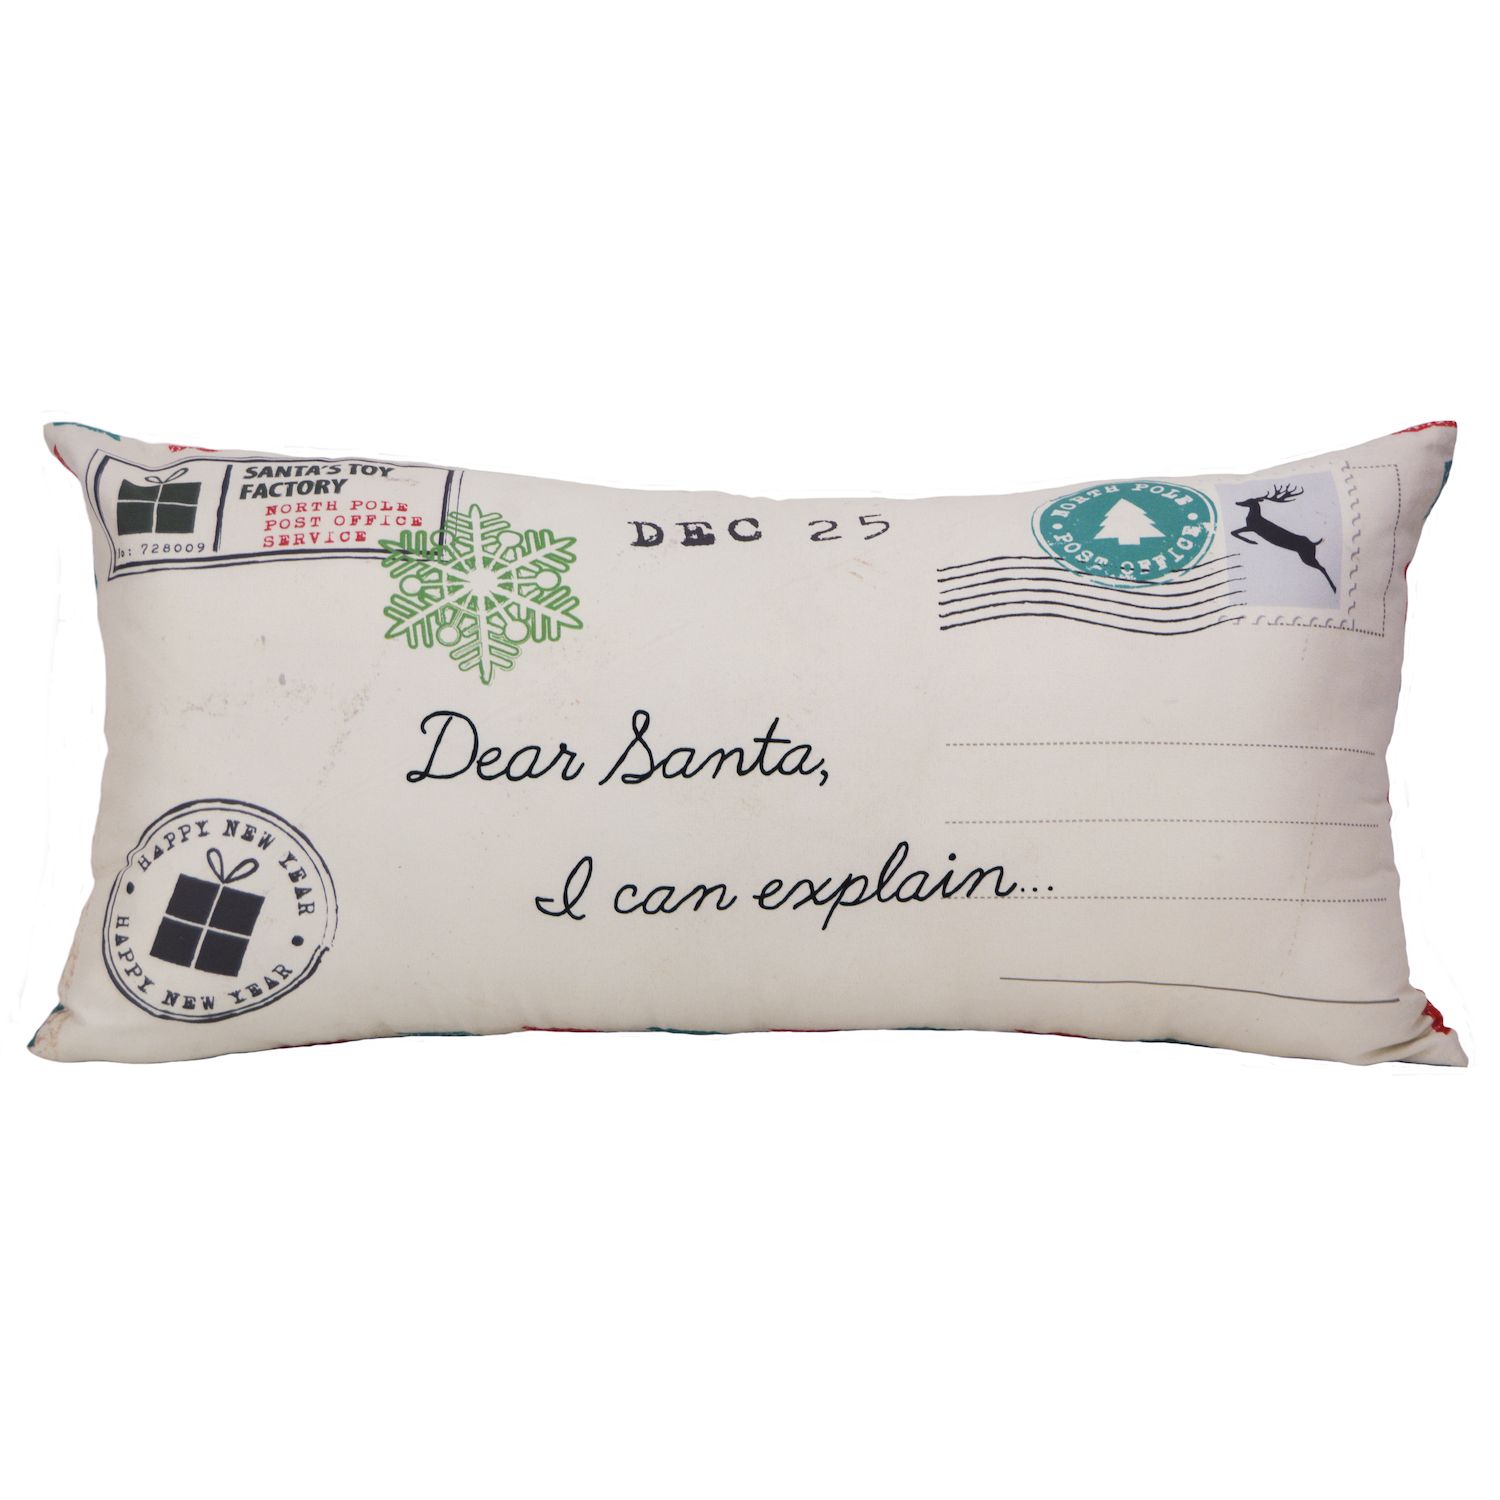 Image for Donna Sharp Tis the Season Letter Pillow at Kohl's.